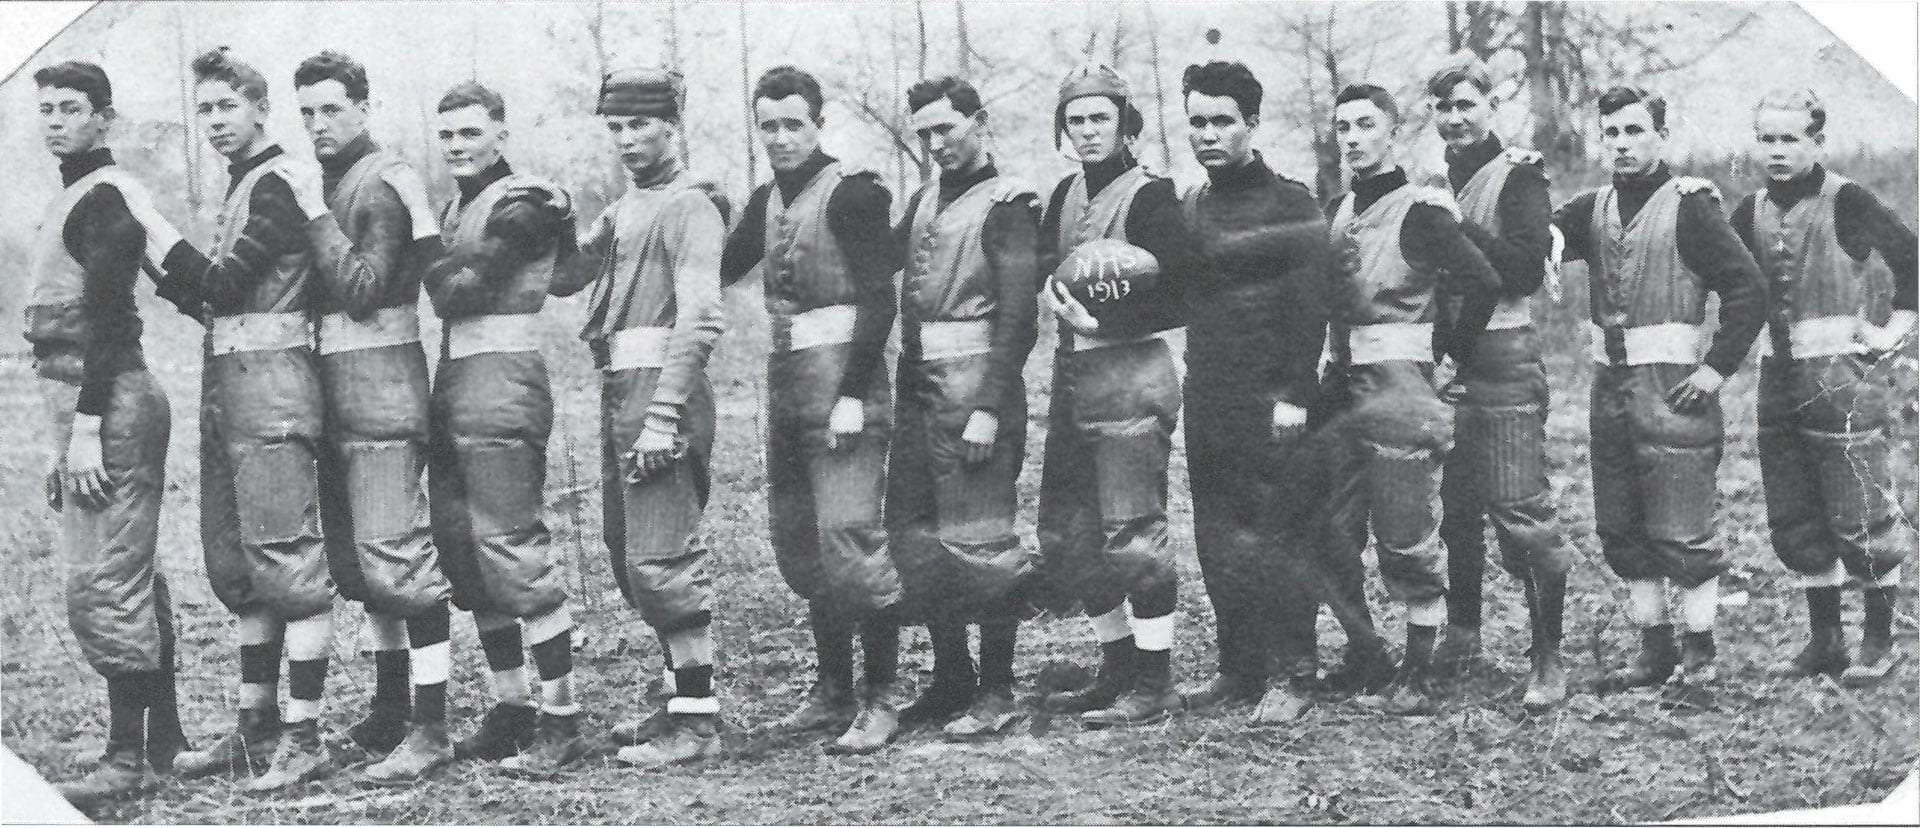 1913 – First Newport High School Football Team